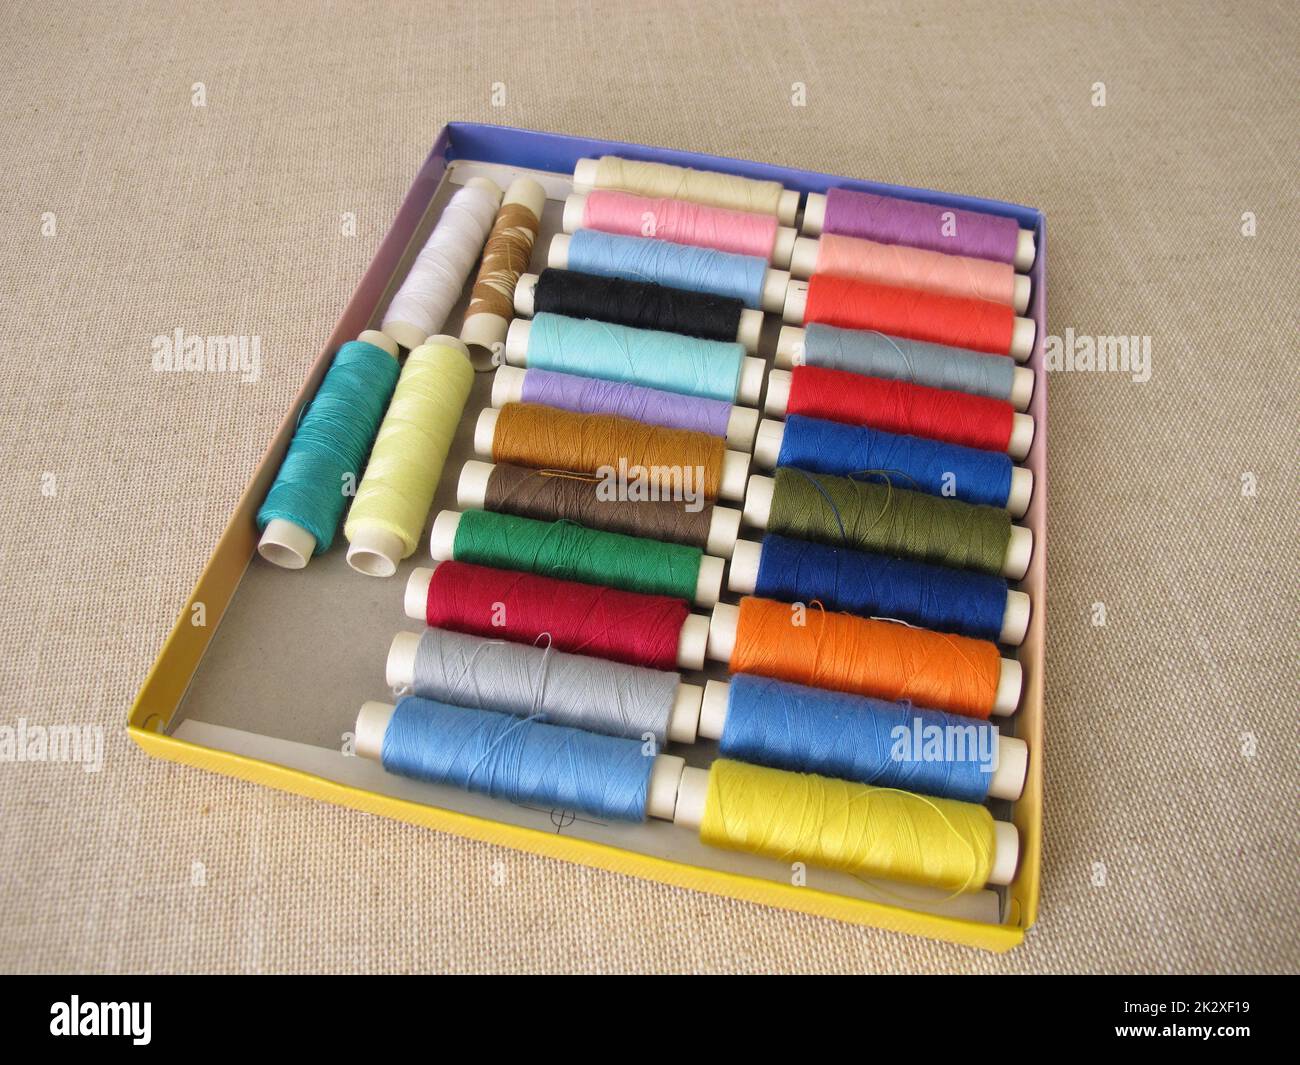 Fil de couture de différentes couleurs dans une boîte Banque D'Images